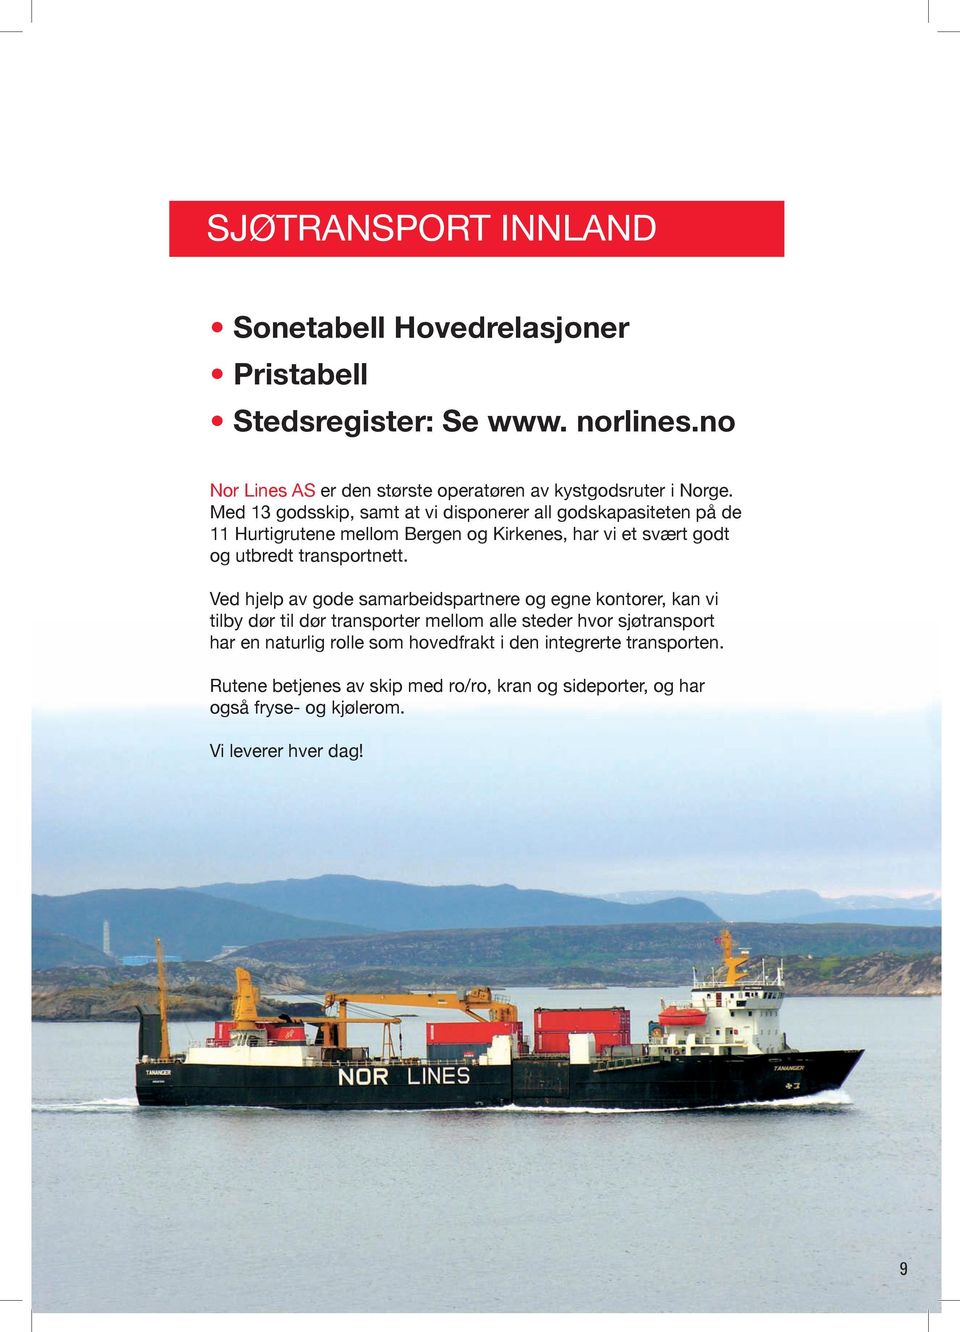 Med 13 godsskip, samt at vi disponerer all godskapasiteten på de 11 Hurtigrutene mellom Bergen og Kirkenes, har vi et svært godt og utbredt transportnett.